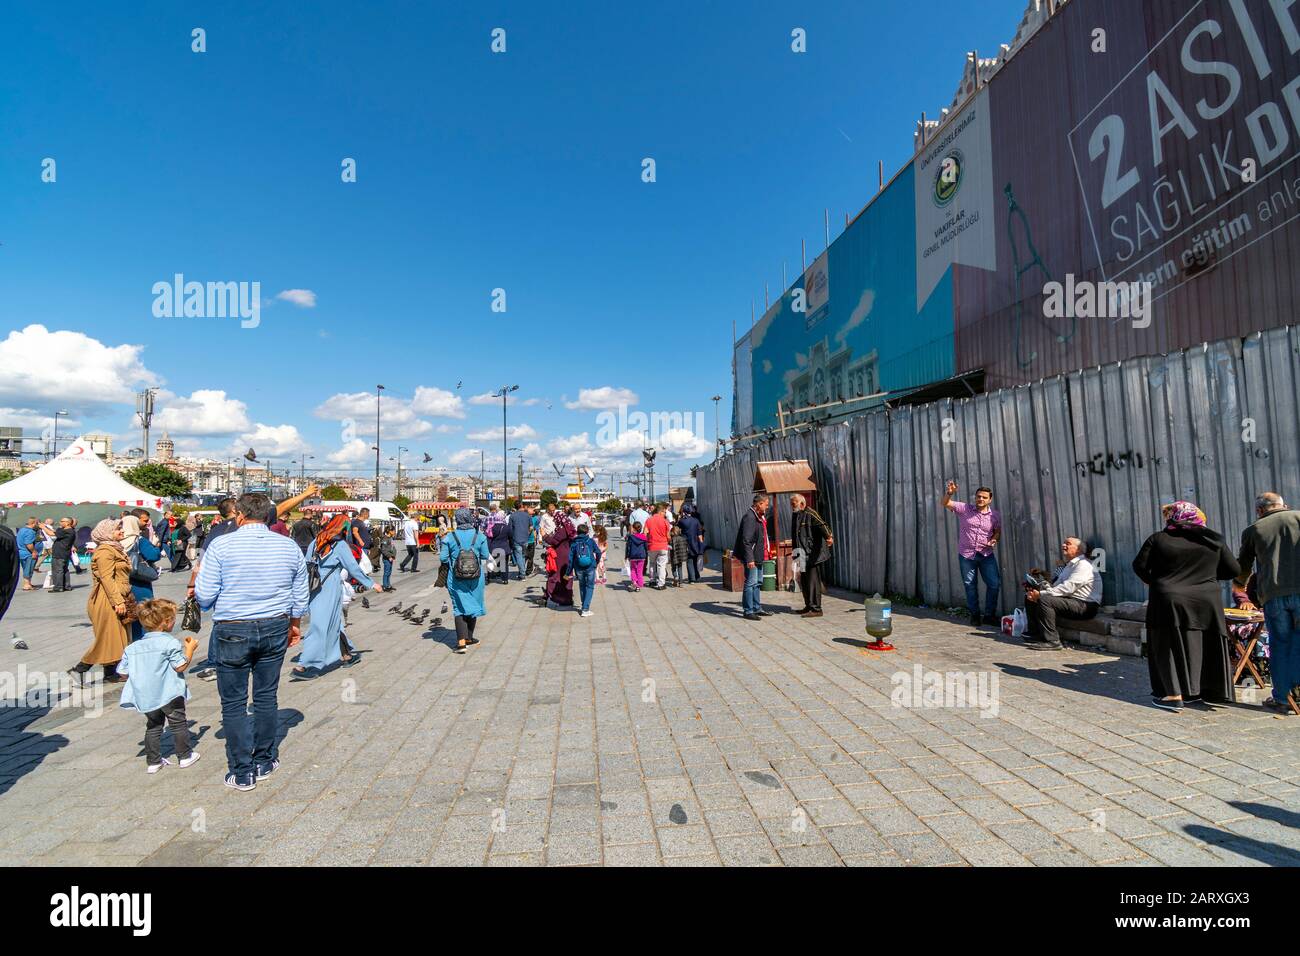 Lokale Türken versammeln sich an einem sonnigen Sommertag in der Nähe der Galata-Brücke in Istanbul, Türkei, auf einem belebten Platz. Stockfoto